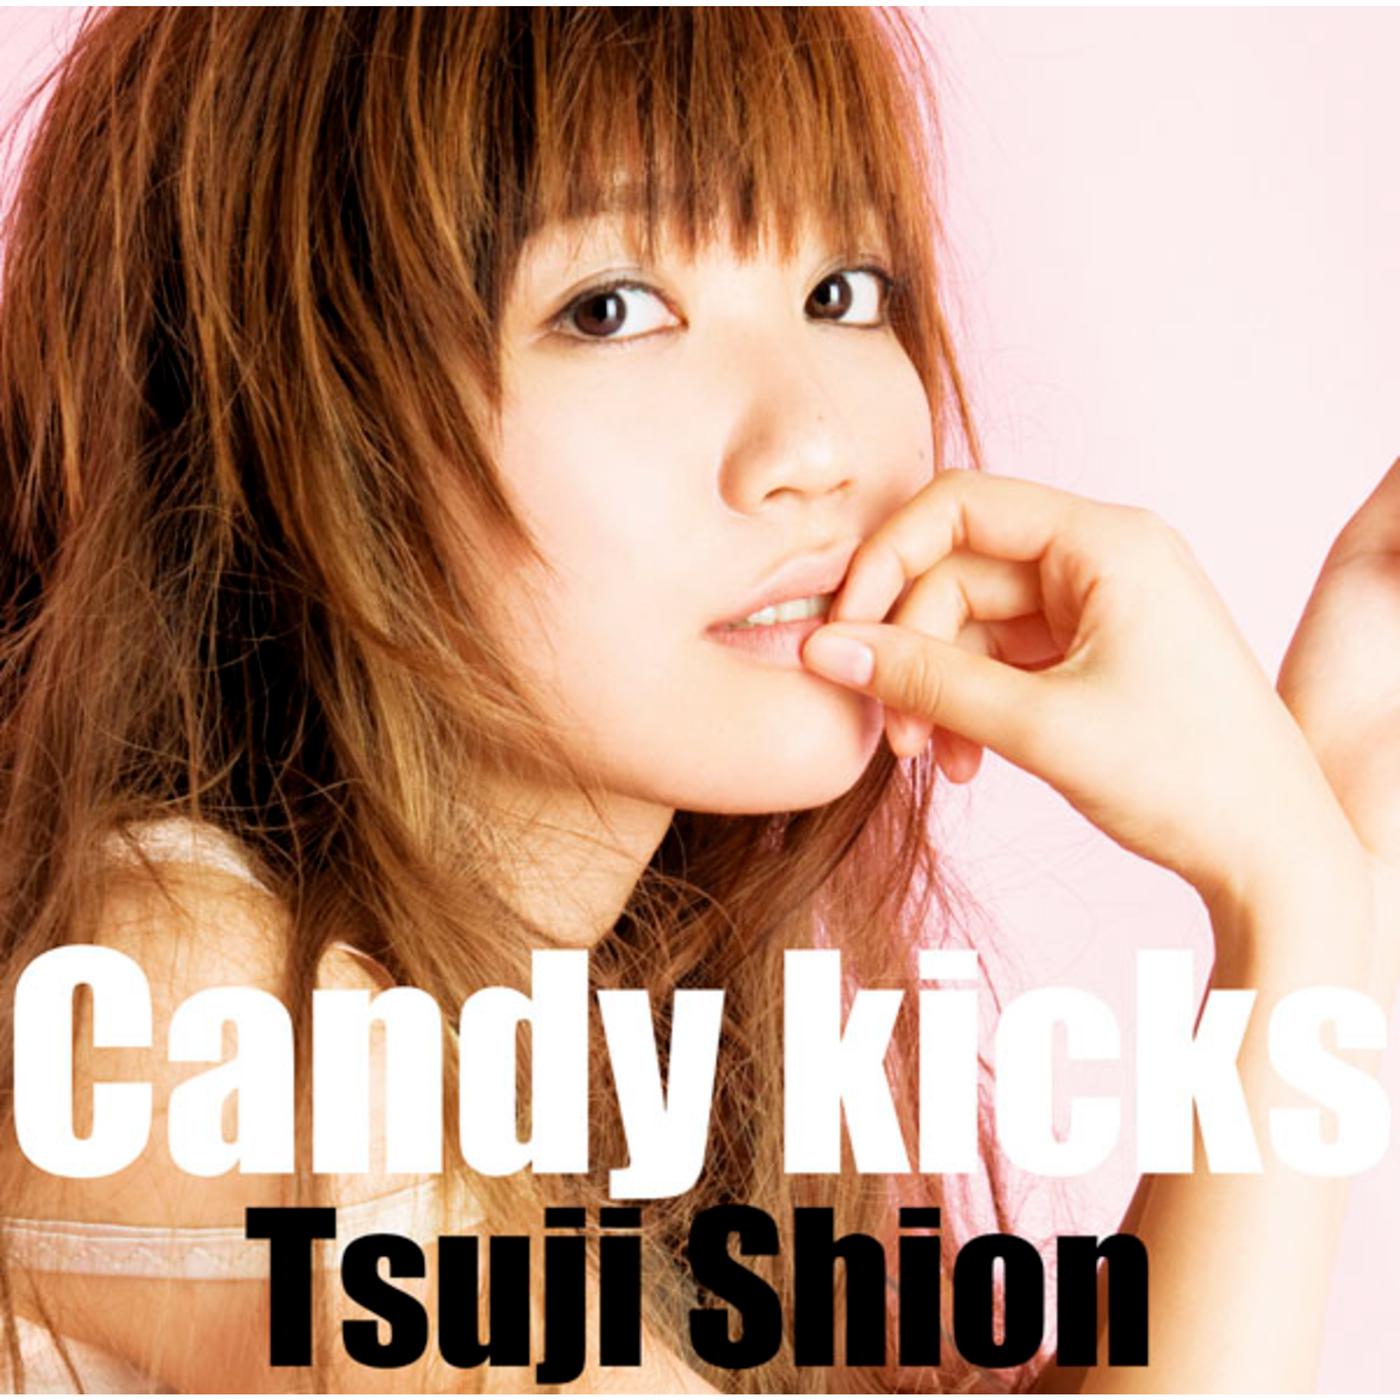 Candy kicks歌词 歌手辻詩音-专辑Candy kicks-单曲《Candy kicks》LRC歌词下载